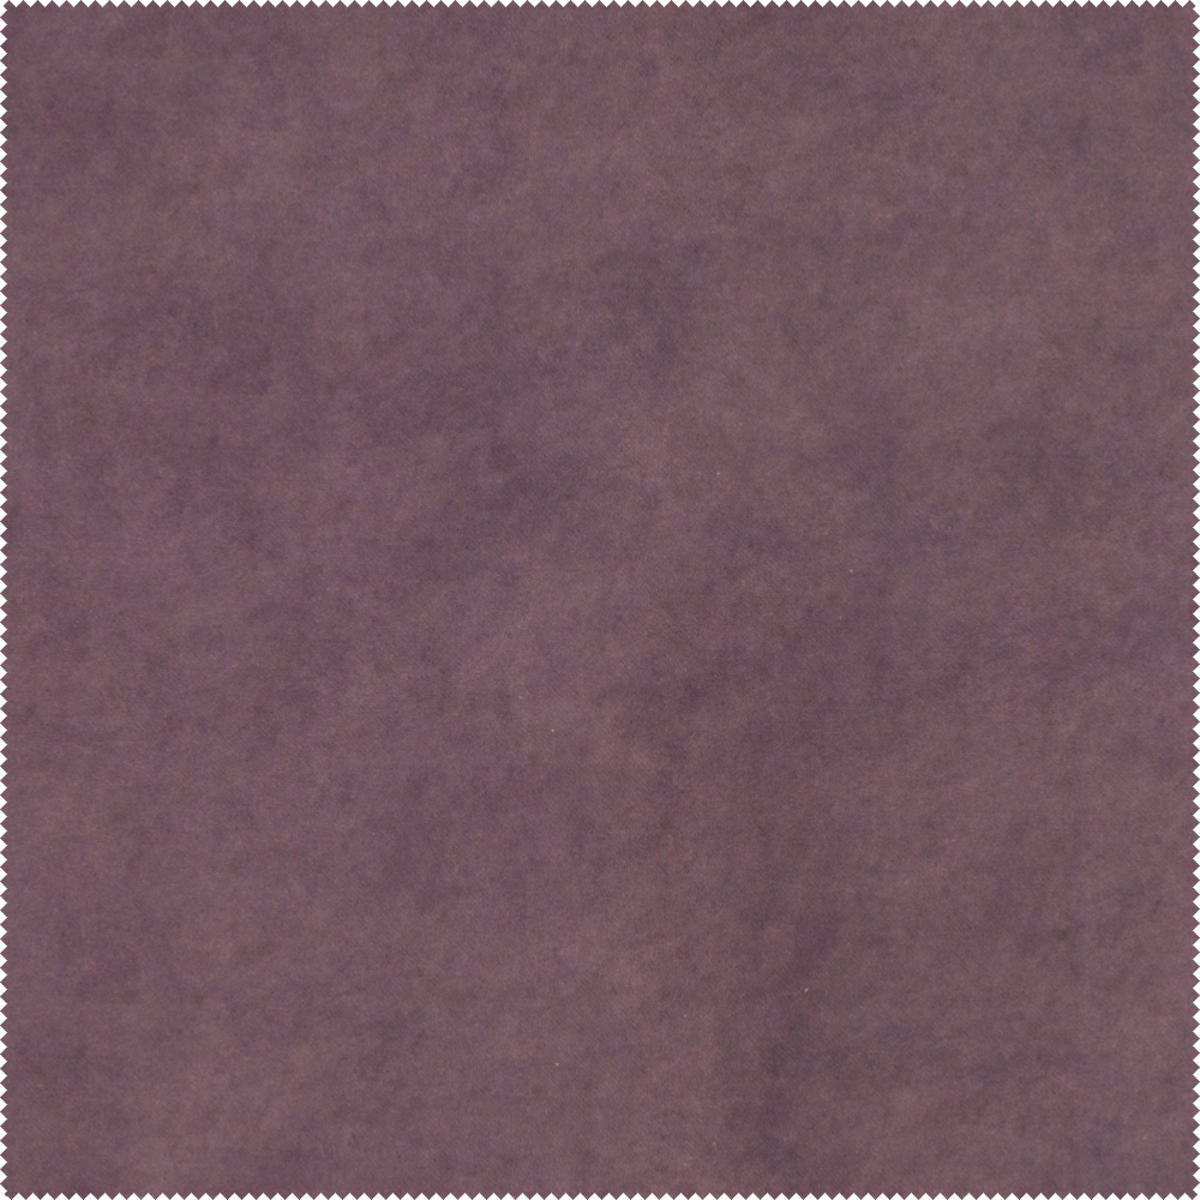 Wyjątkowa tkanina Bellagio 451 Aquaclean w kolorze purpurowym. Niezwykła barwa i wytrzymały splot.